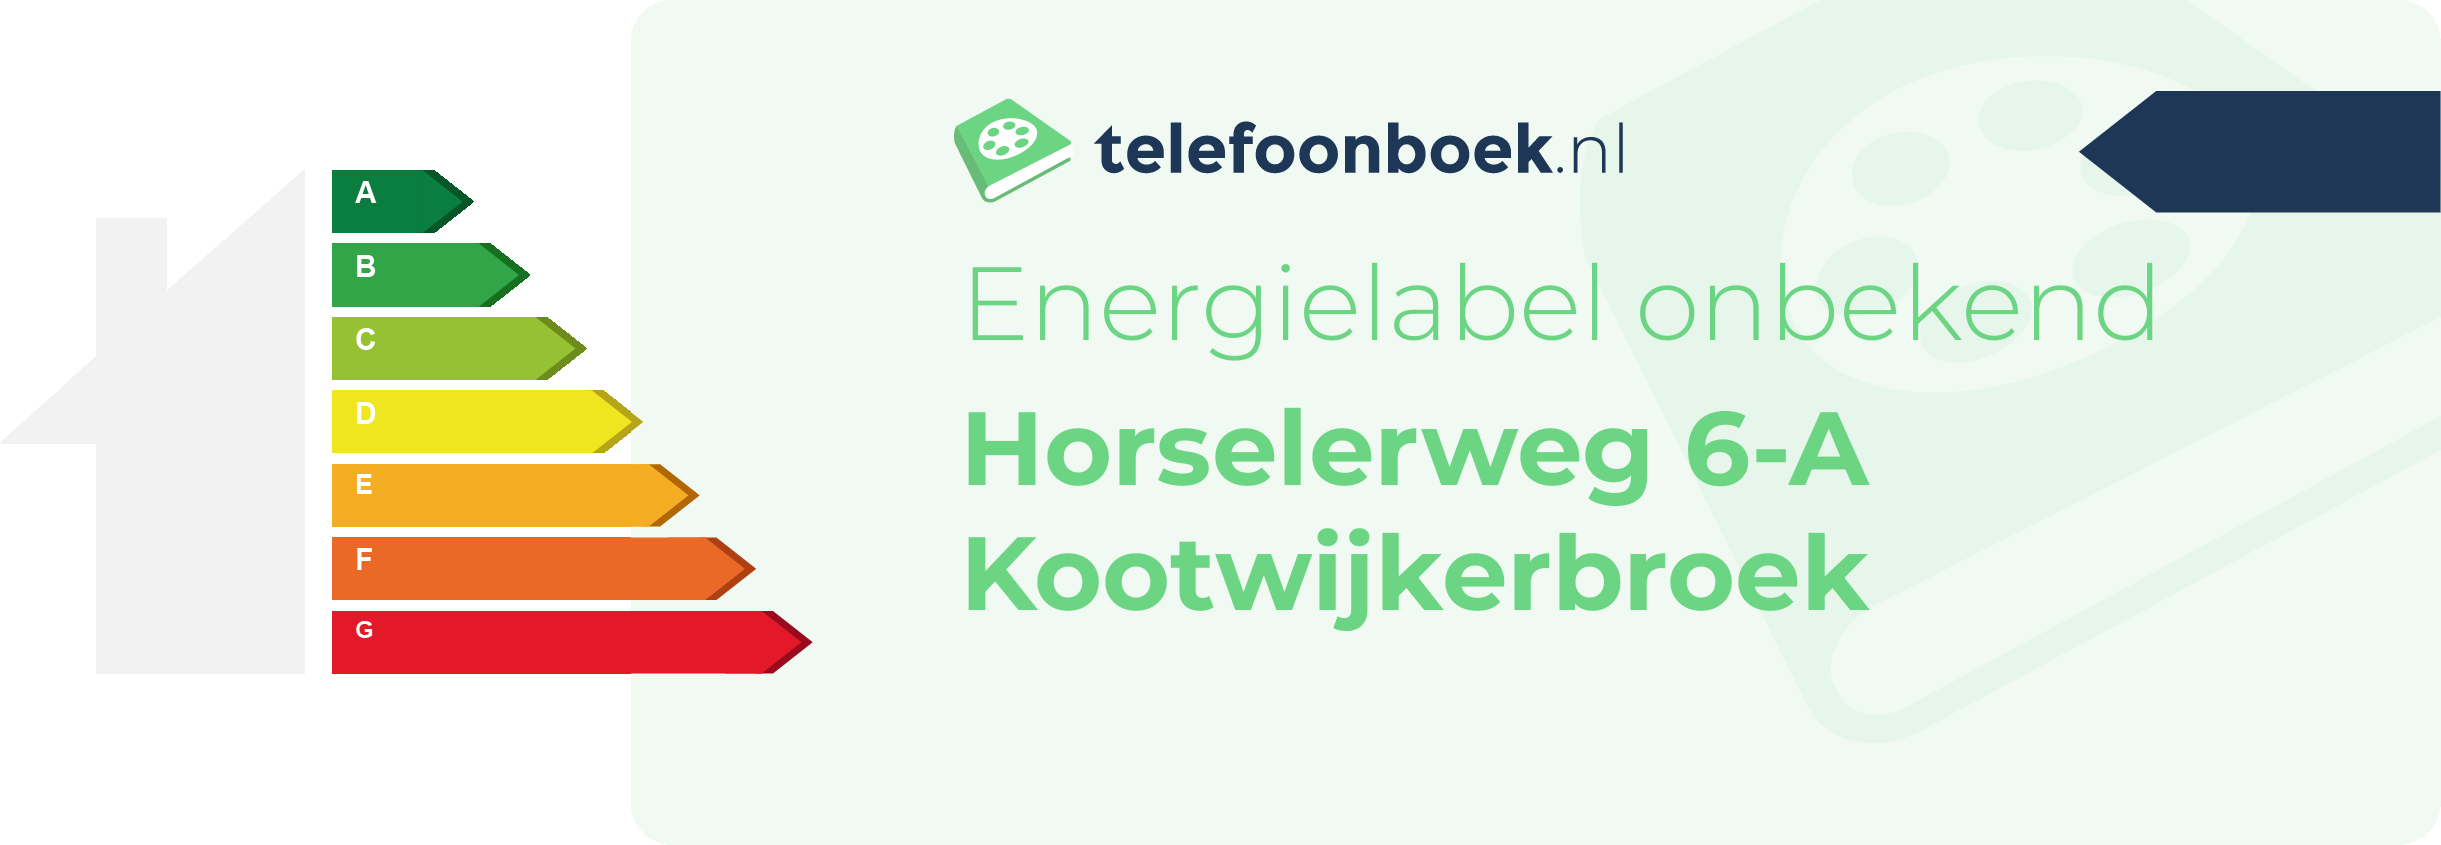 Energielabel Horselerweg 6-A Kootwijkerbroek